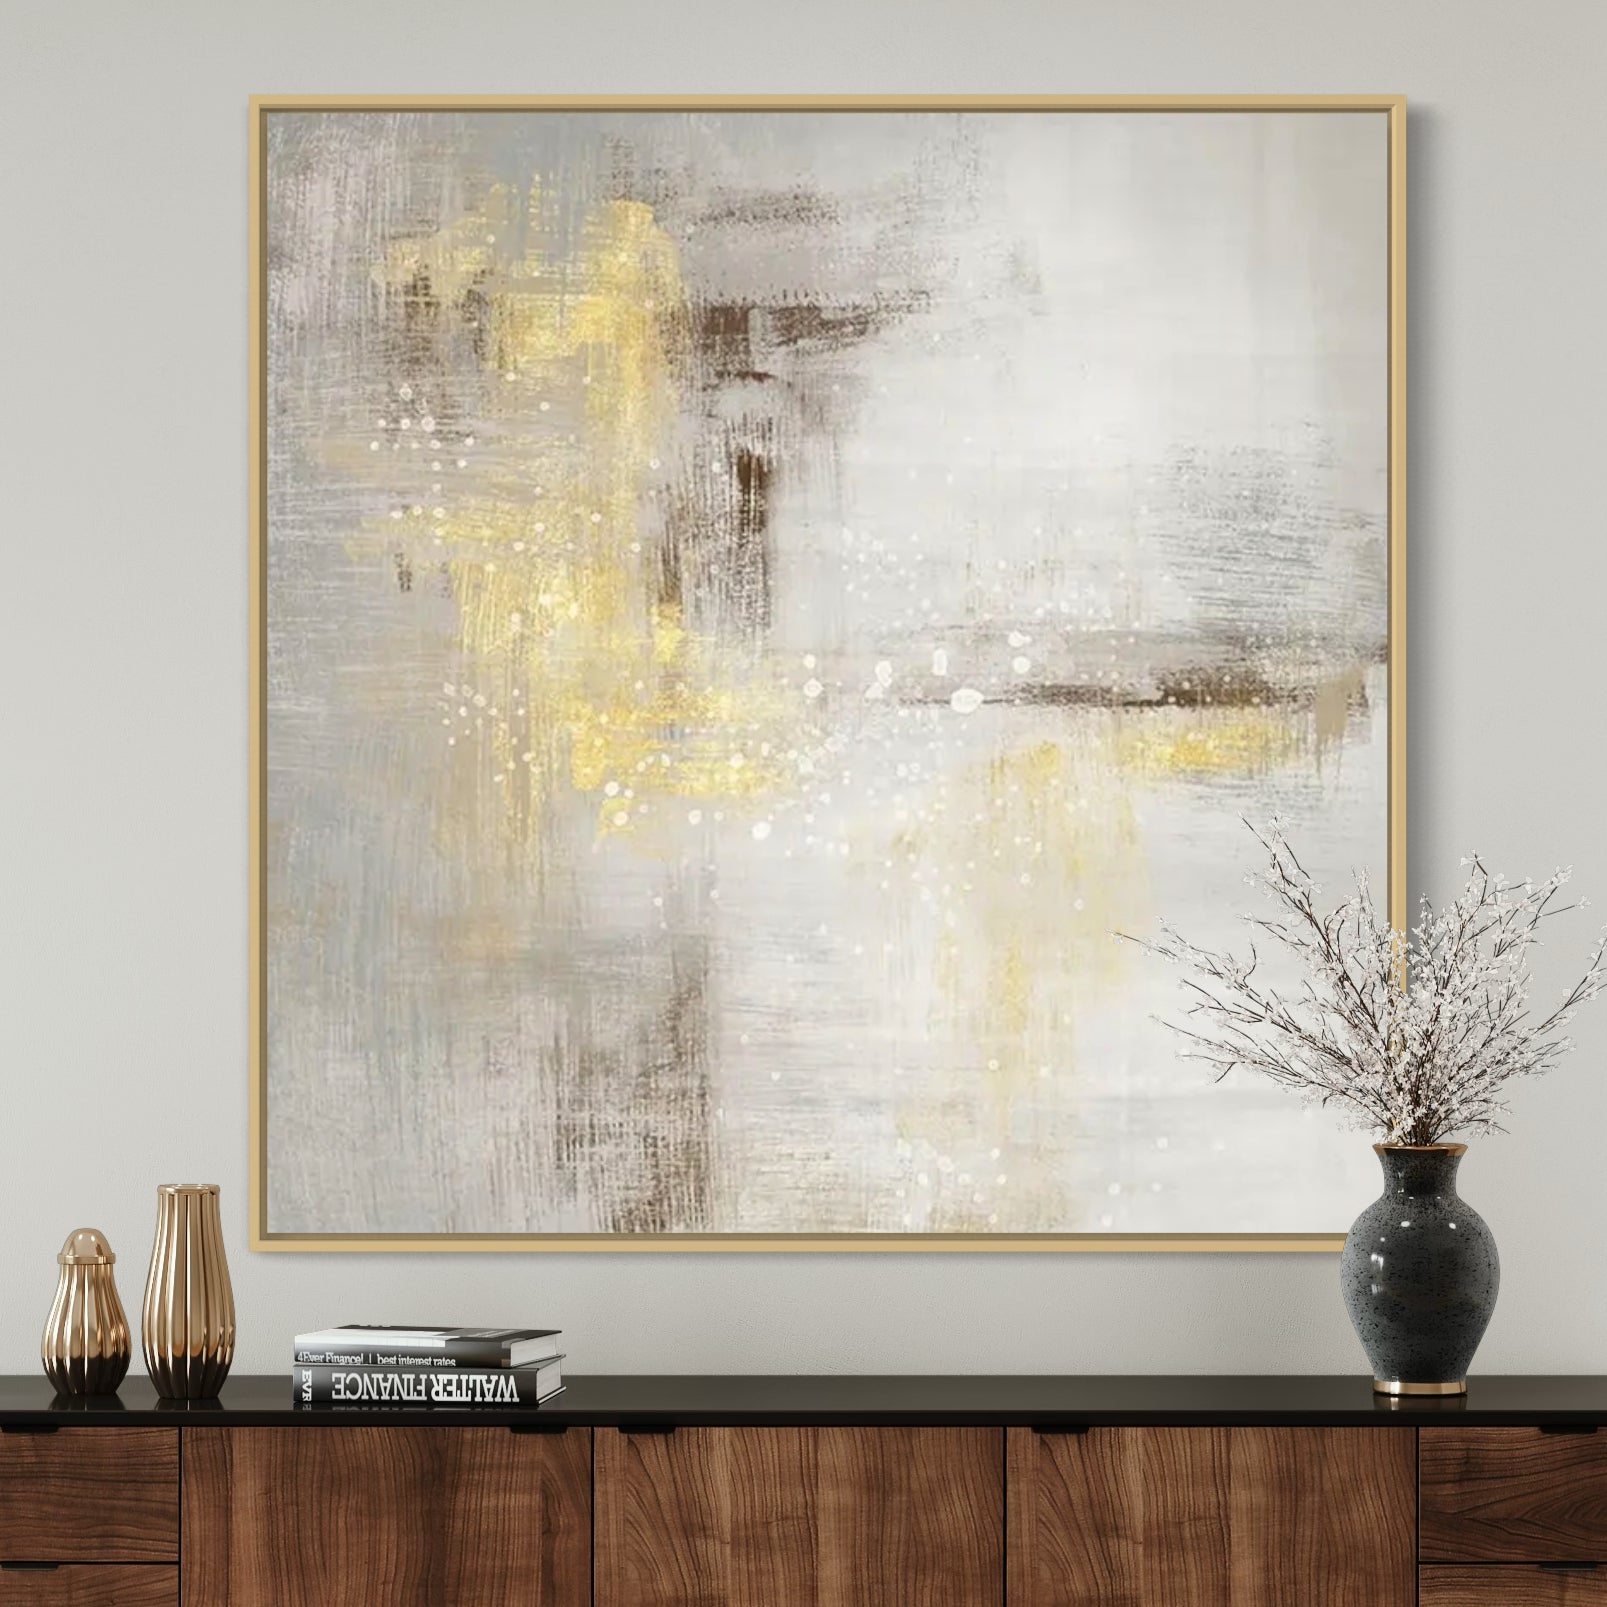 The World Of Light, Golden / 150x150cm